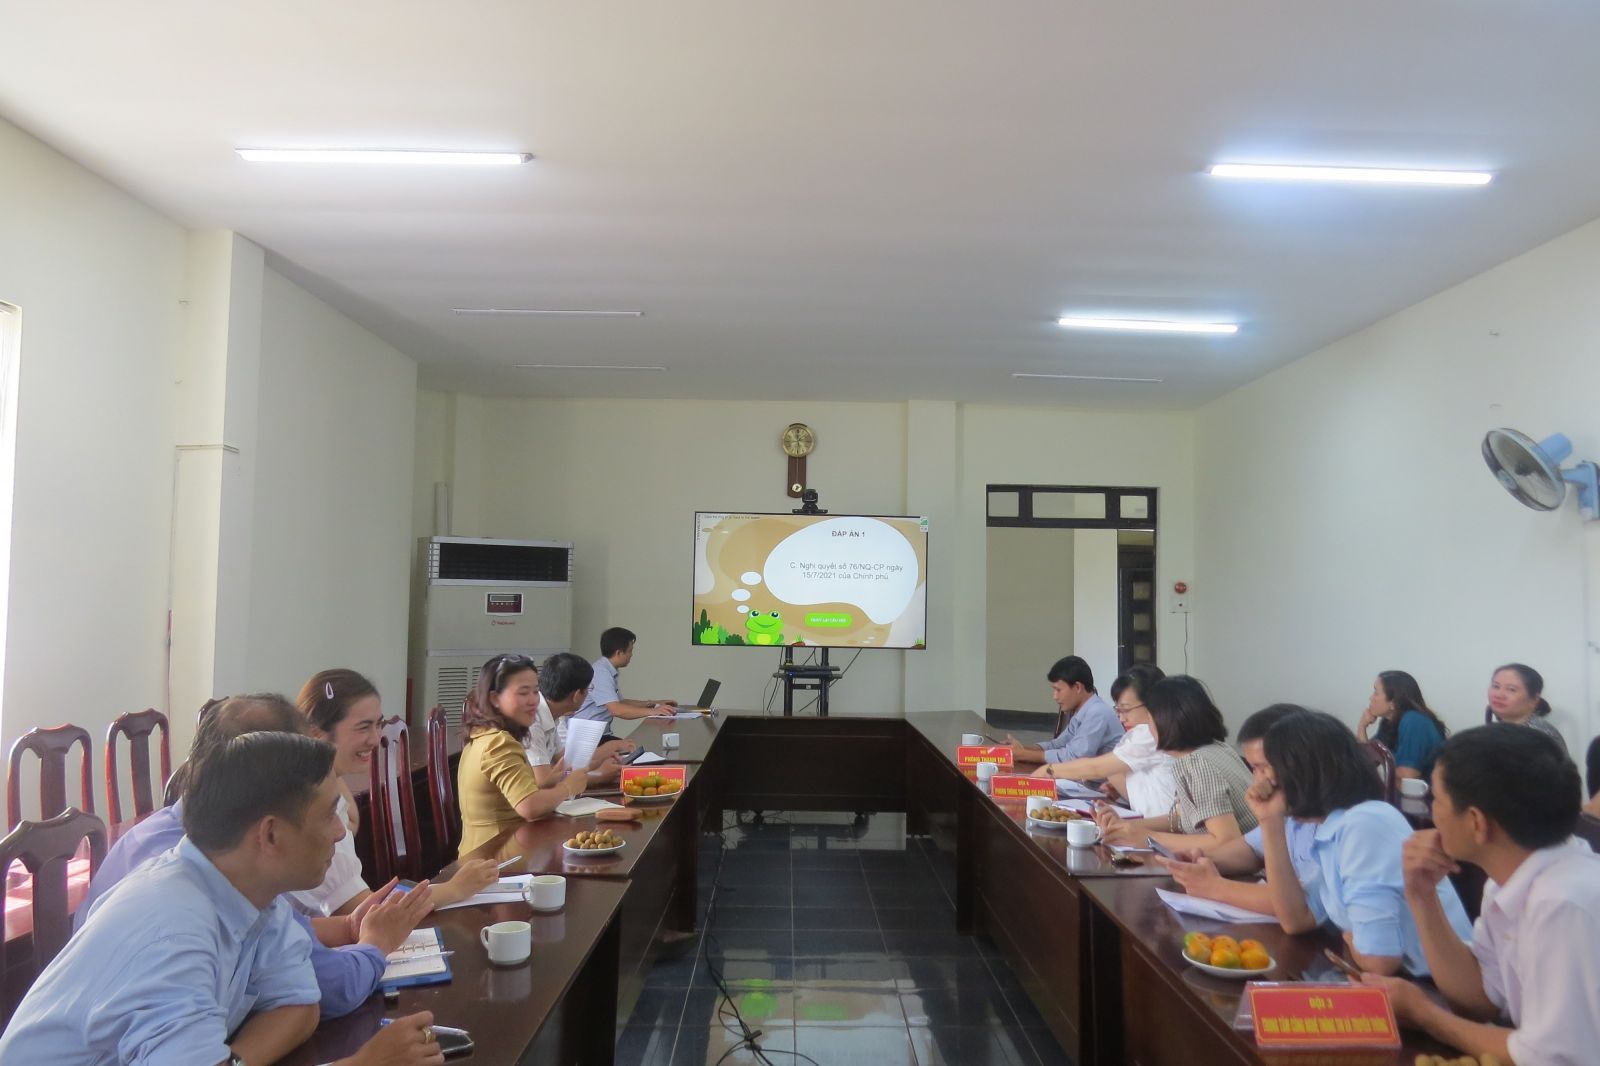 Sở Thông tin và Truyền thông tỉnh Đắk Nông  tổ chức Cuộc thi “Tìm hiểu về cải cách hành chính”